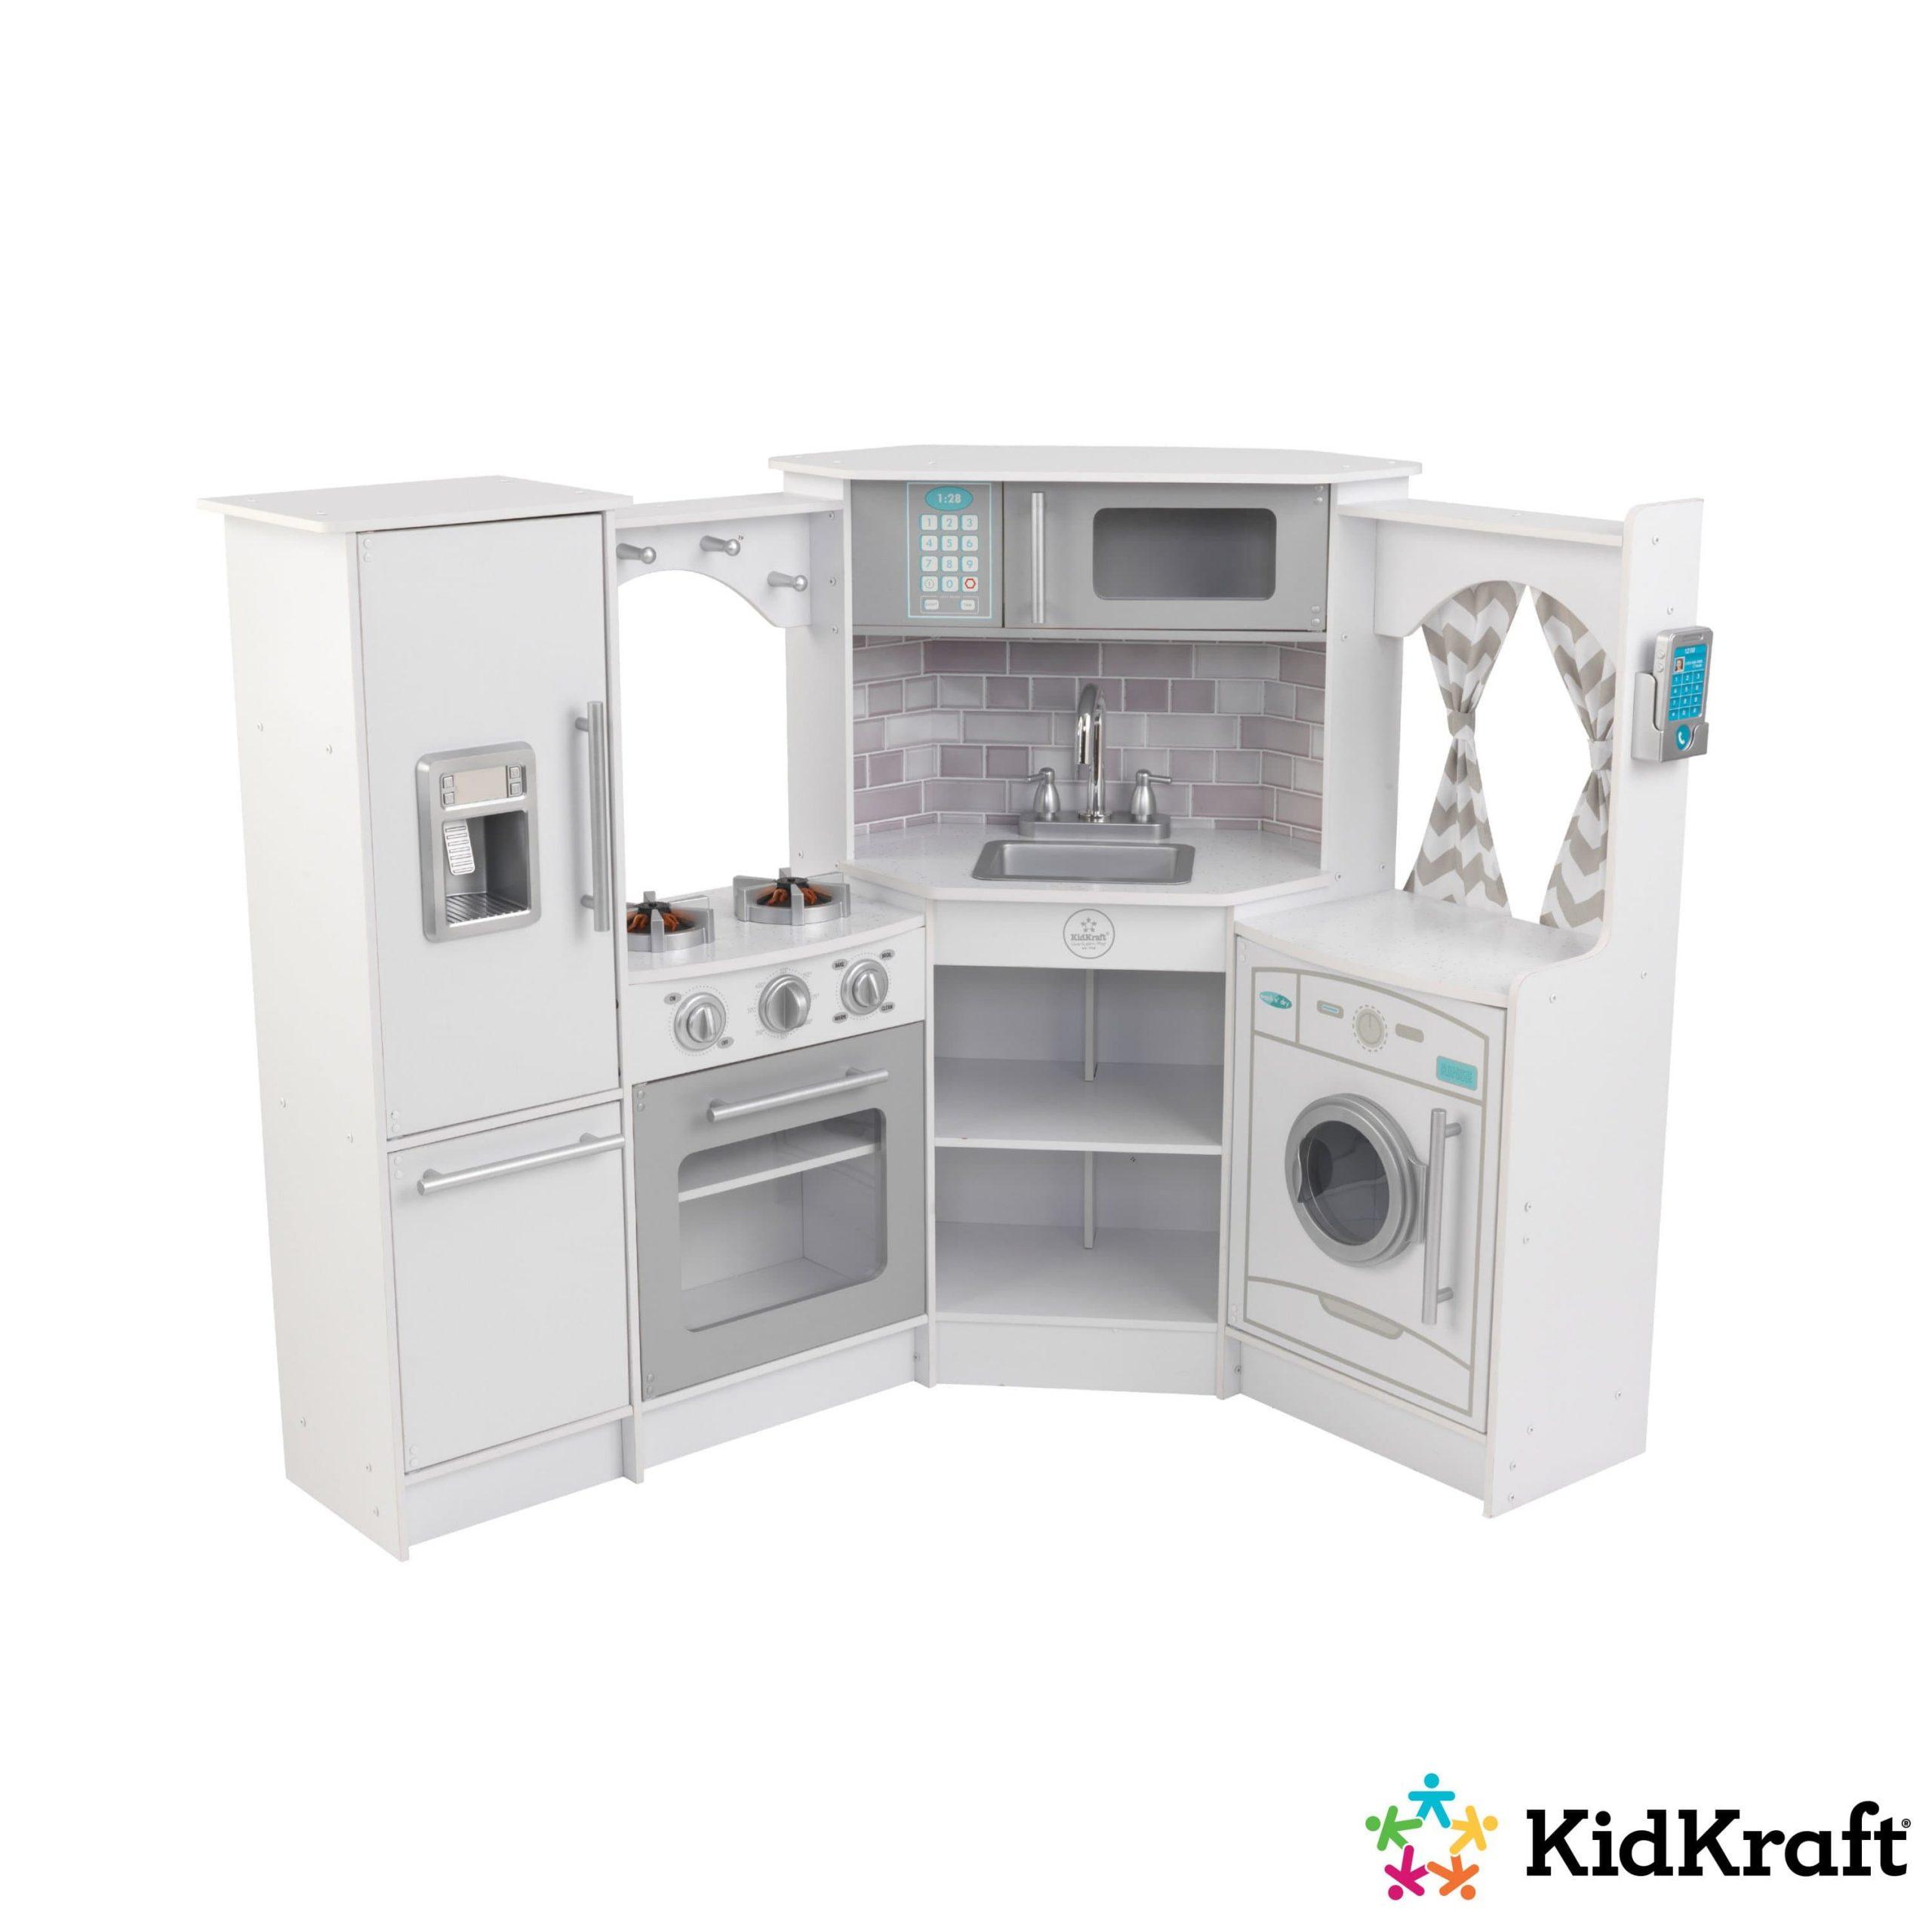 مطبخ اطفال زاوية أبيض مع الأضواء والأصوات كيد كرافت KidKraft Ultimate Corner Play Kitchen with Lights & Sounds